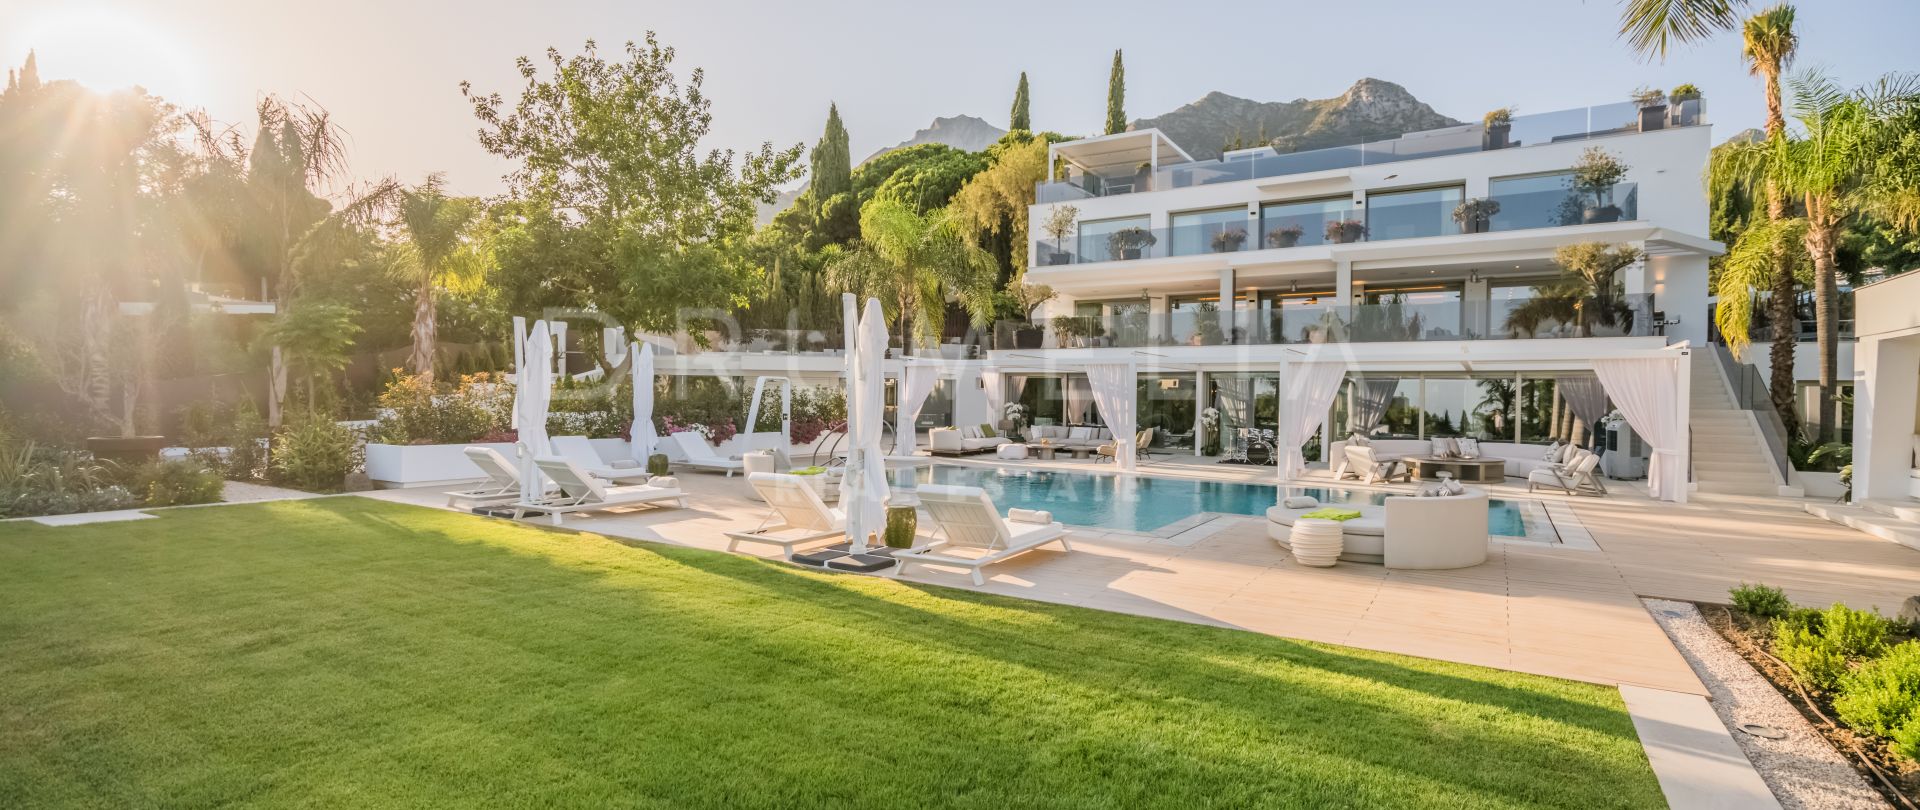 Villa Serenity - Enastående lyxig modern villa, Cascada de Camojan, Marbella Golden Mile